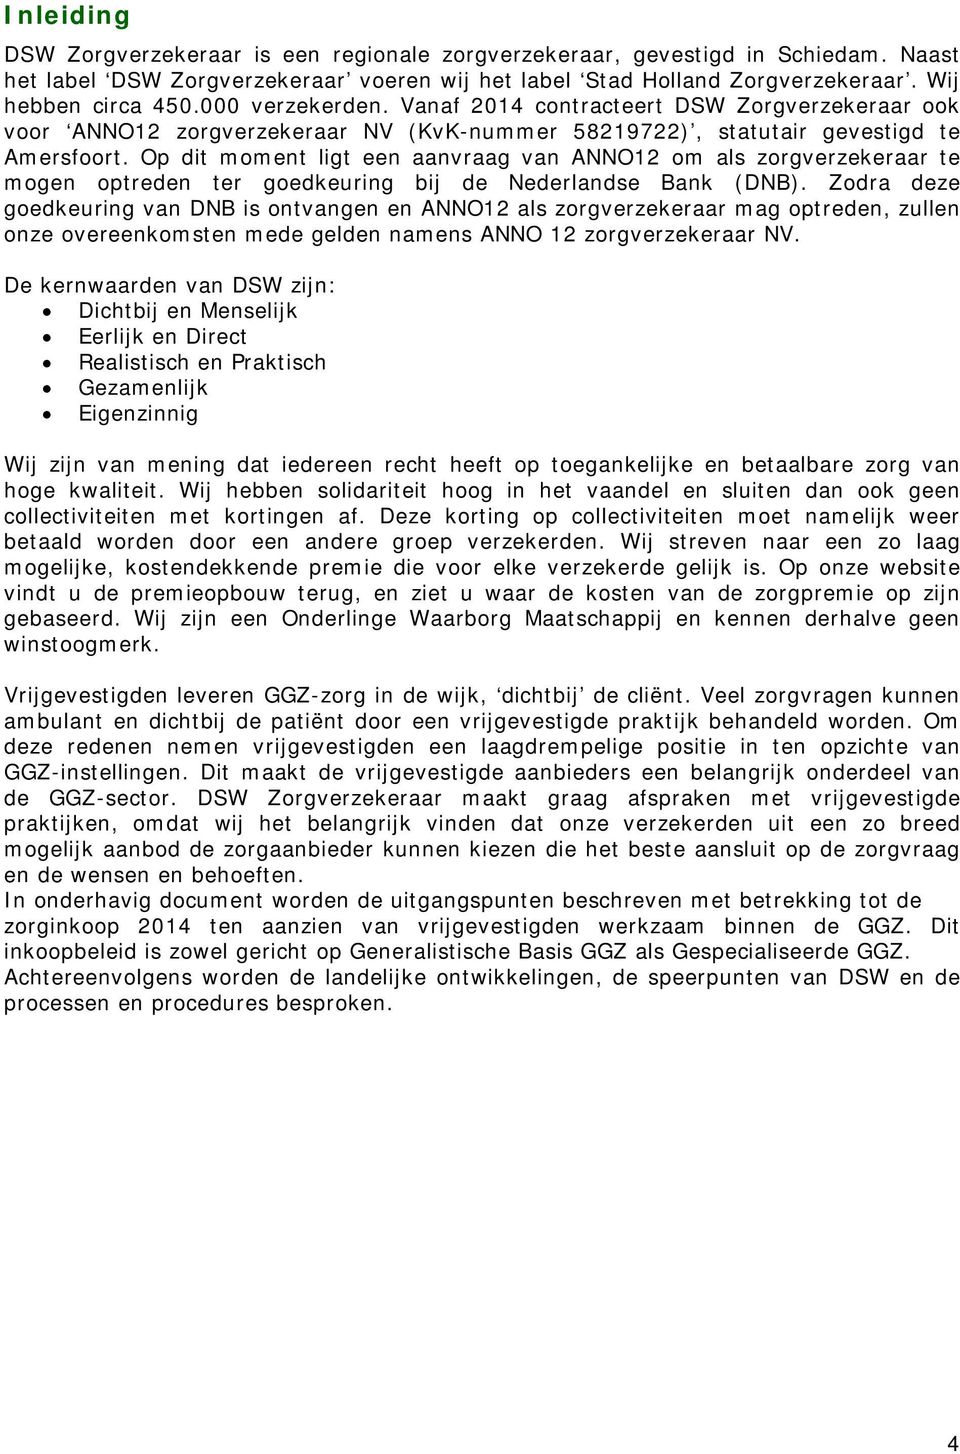 Op dit moment ligt een aanvraag van ANNO12 om als zorgverzekeraar te mogen optreden ter goedkeuring bij de Nederlandse Bank (DNB).